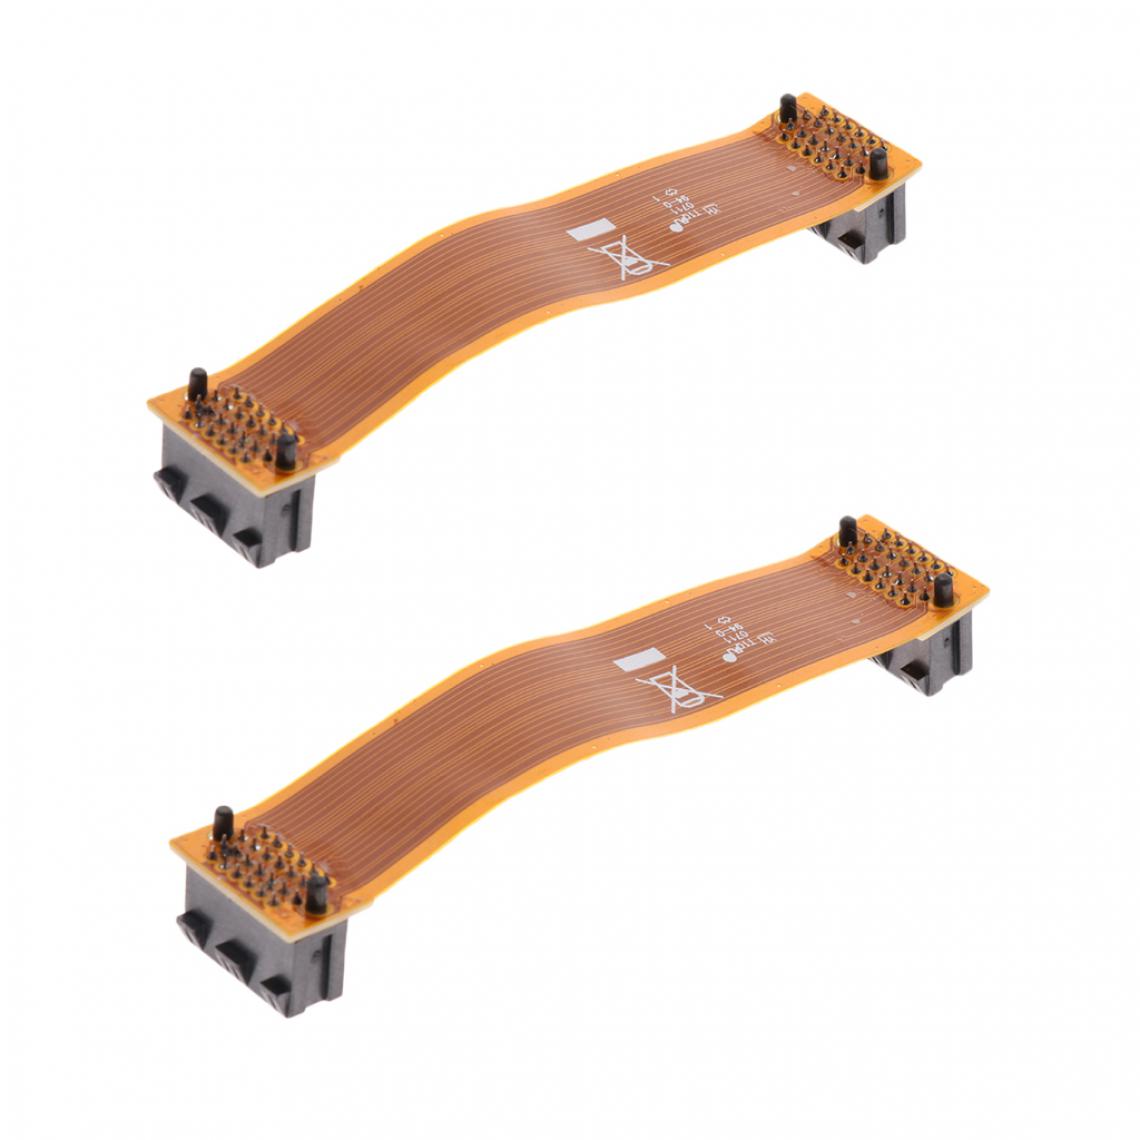 marque generique - 2x Pci-e Pont Flexible Vidéo Connecctor Câble Crossfire 10cm Pour Sli N-card Vert - Câble antenne